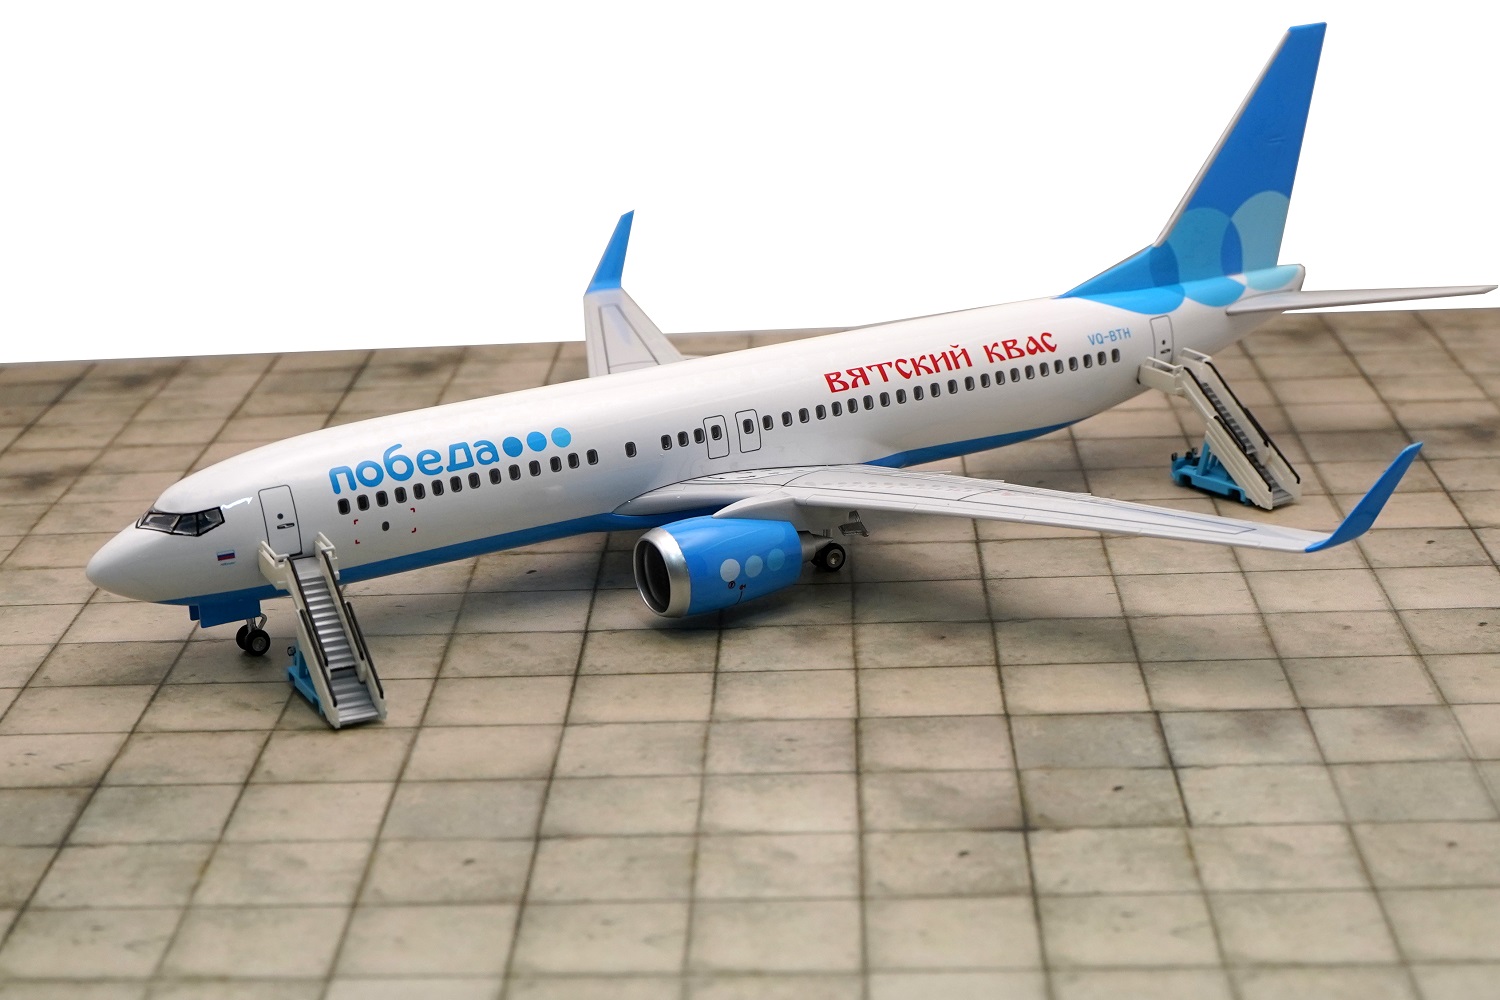    737-800  .  47 .  # 9 hobbyplus.ru